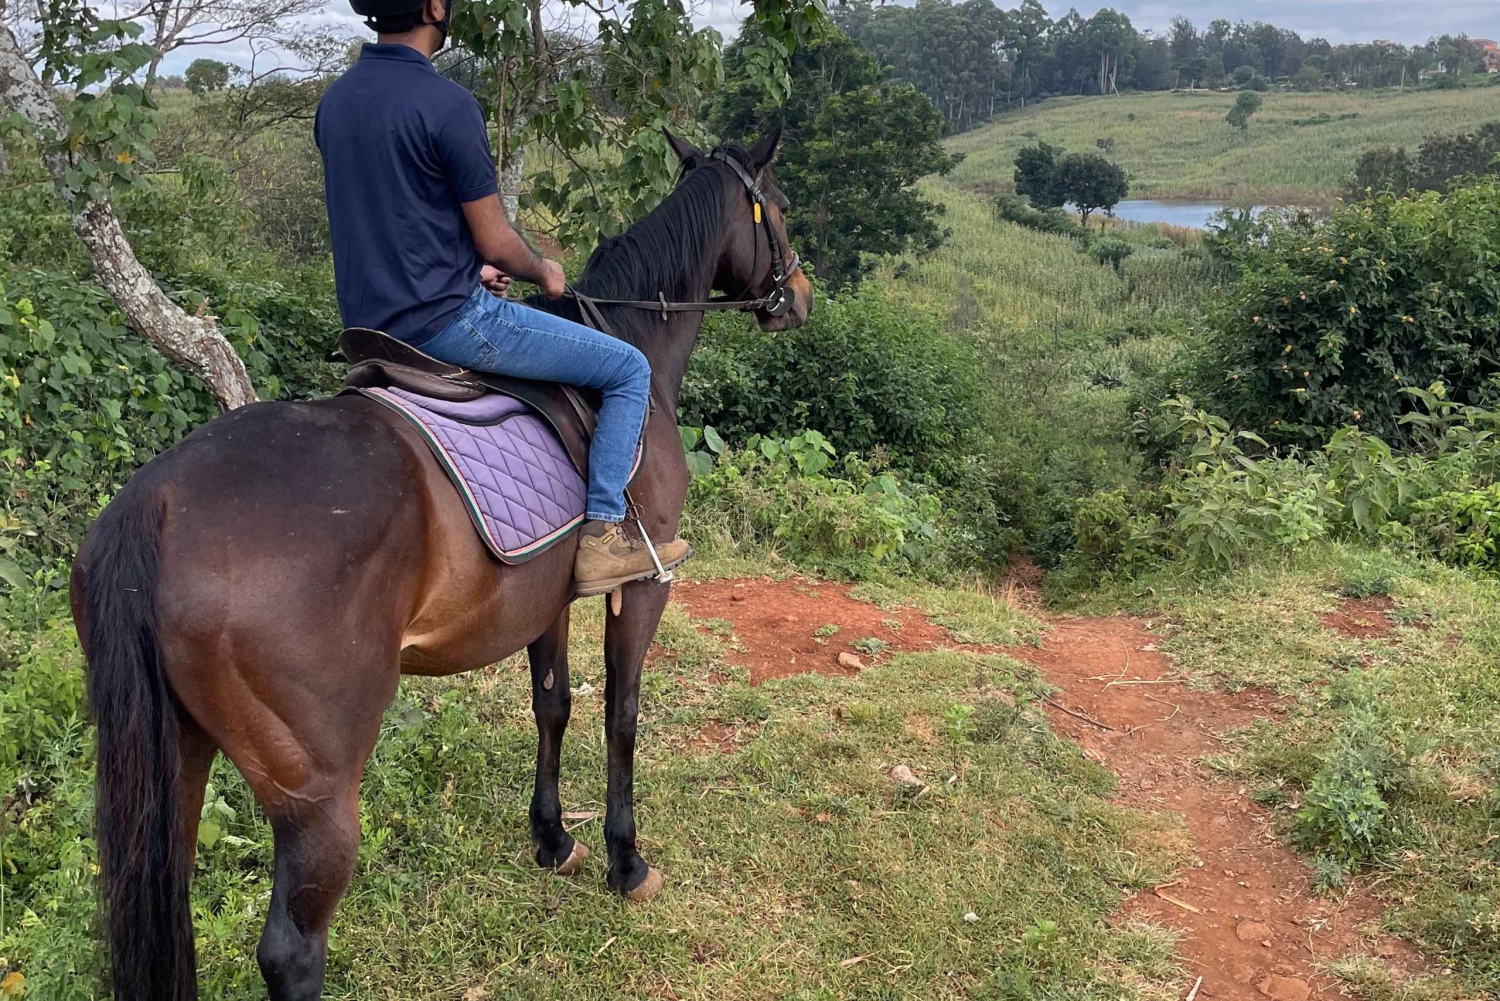 Nairobi: Karura Forest Ratsastusretki hevosen selässä